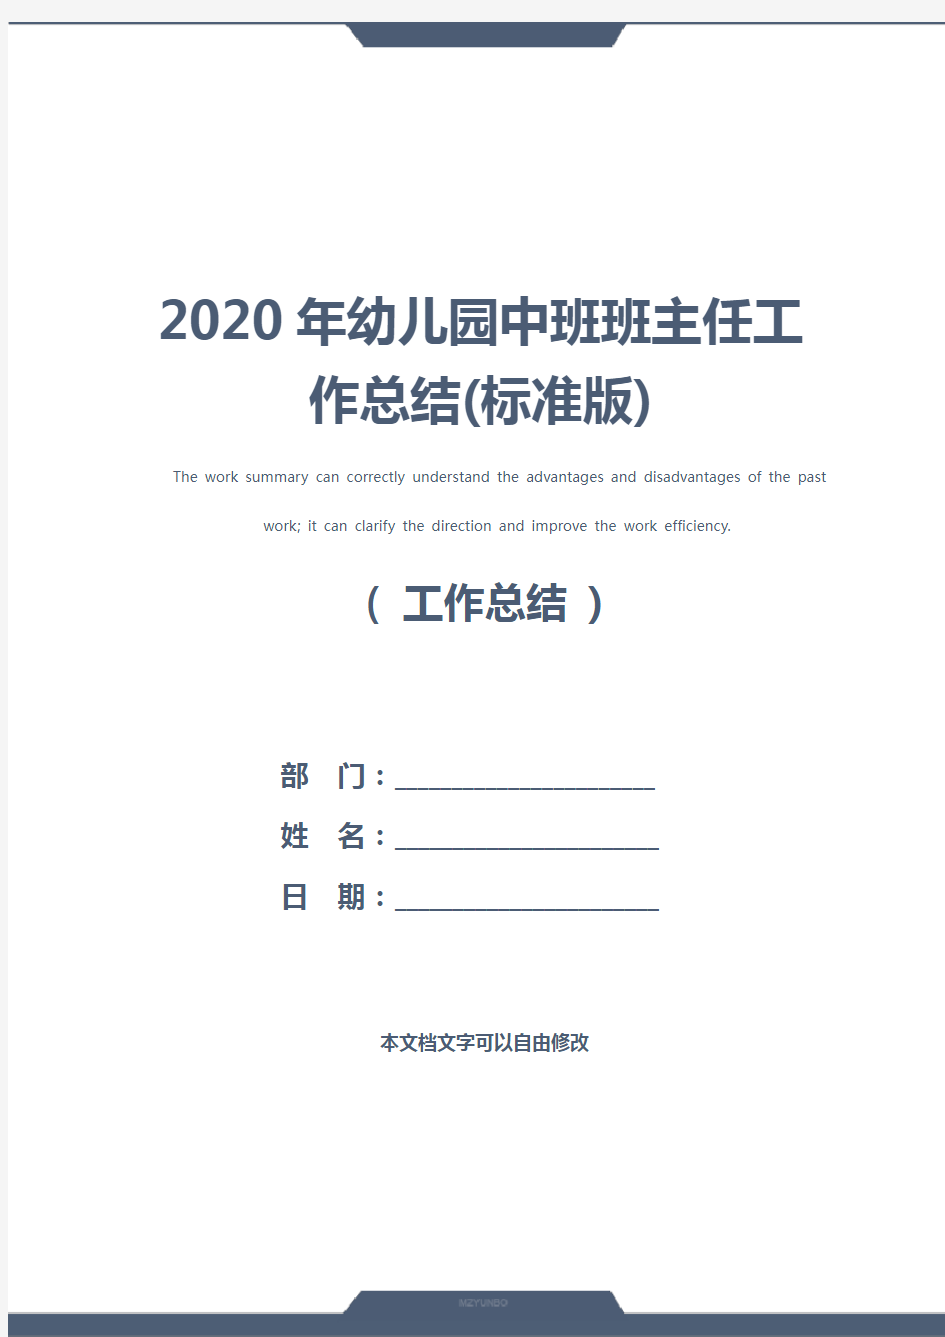 2020年幼儿园中班班主任工作总结(标准版)